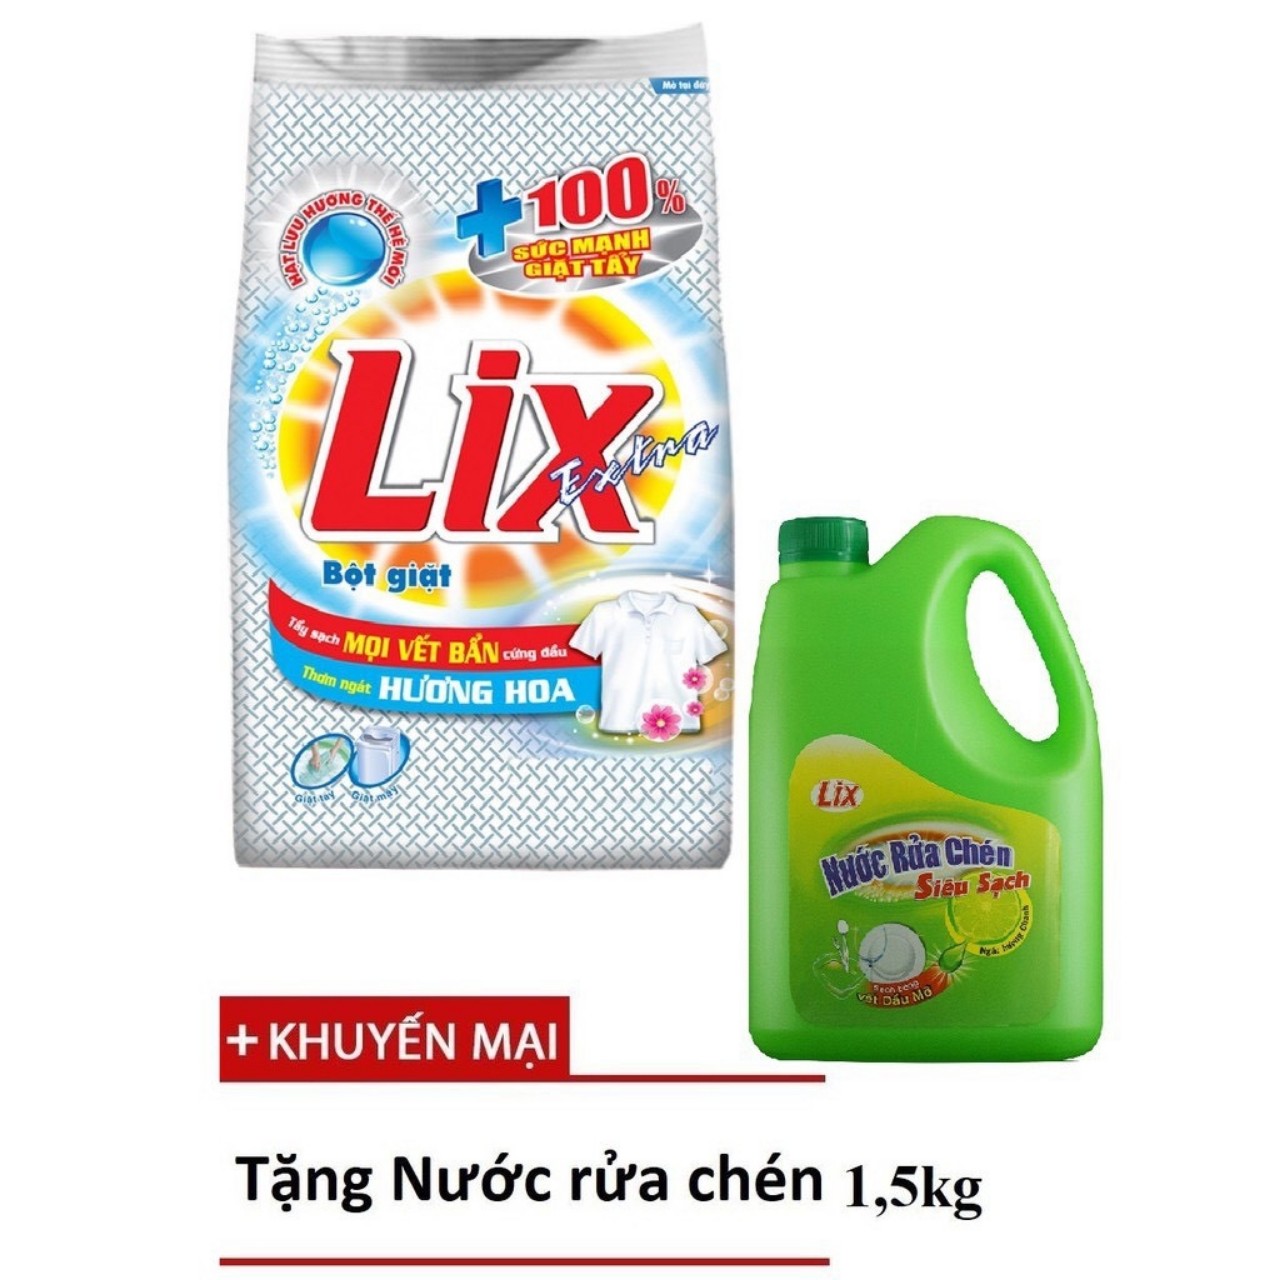 HCMTRỢ GIÁ- Bột giặt LIX Extra Hương Hoa 5,5kg tặng can NRC Yes 750g trà